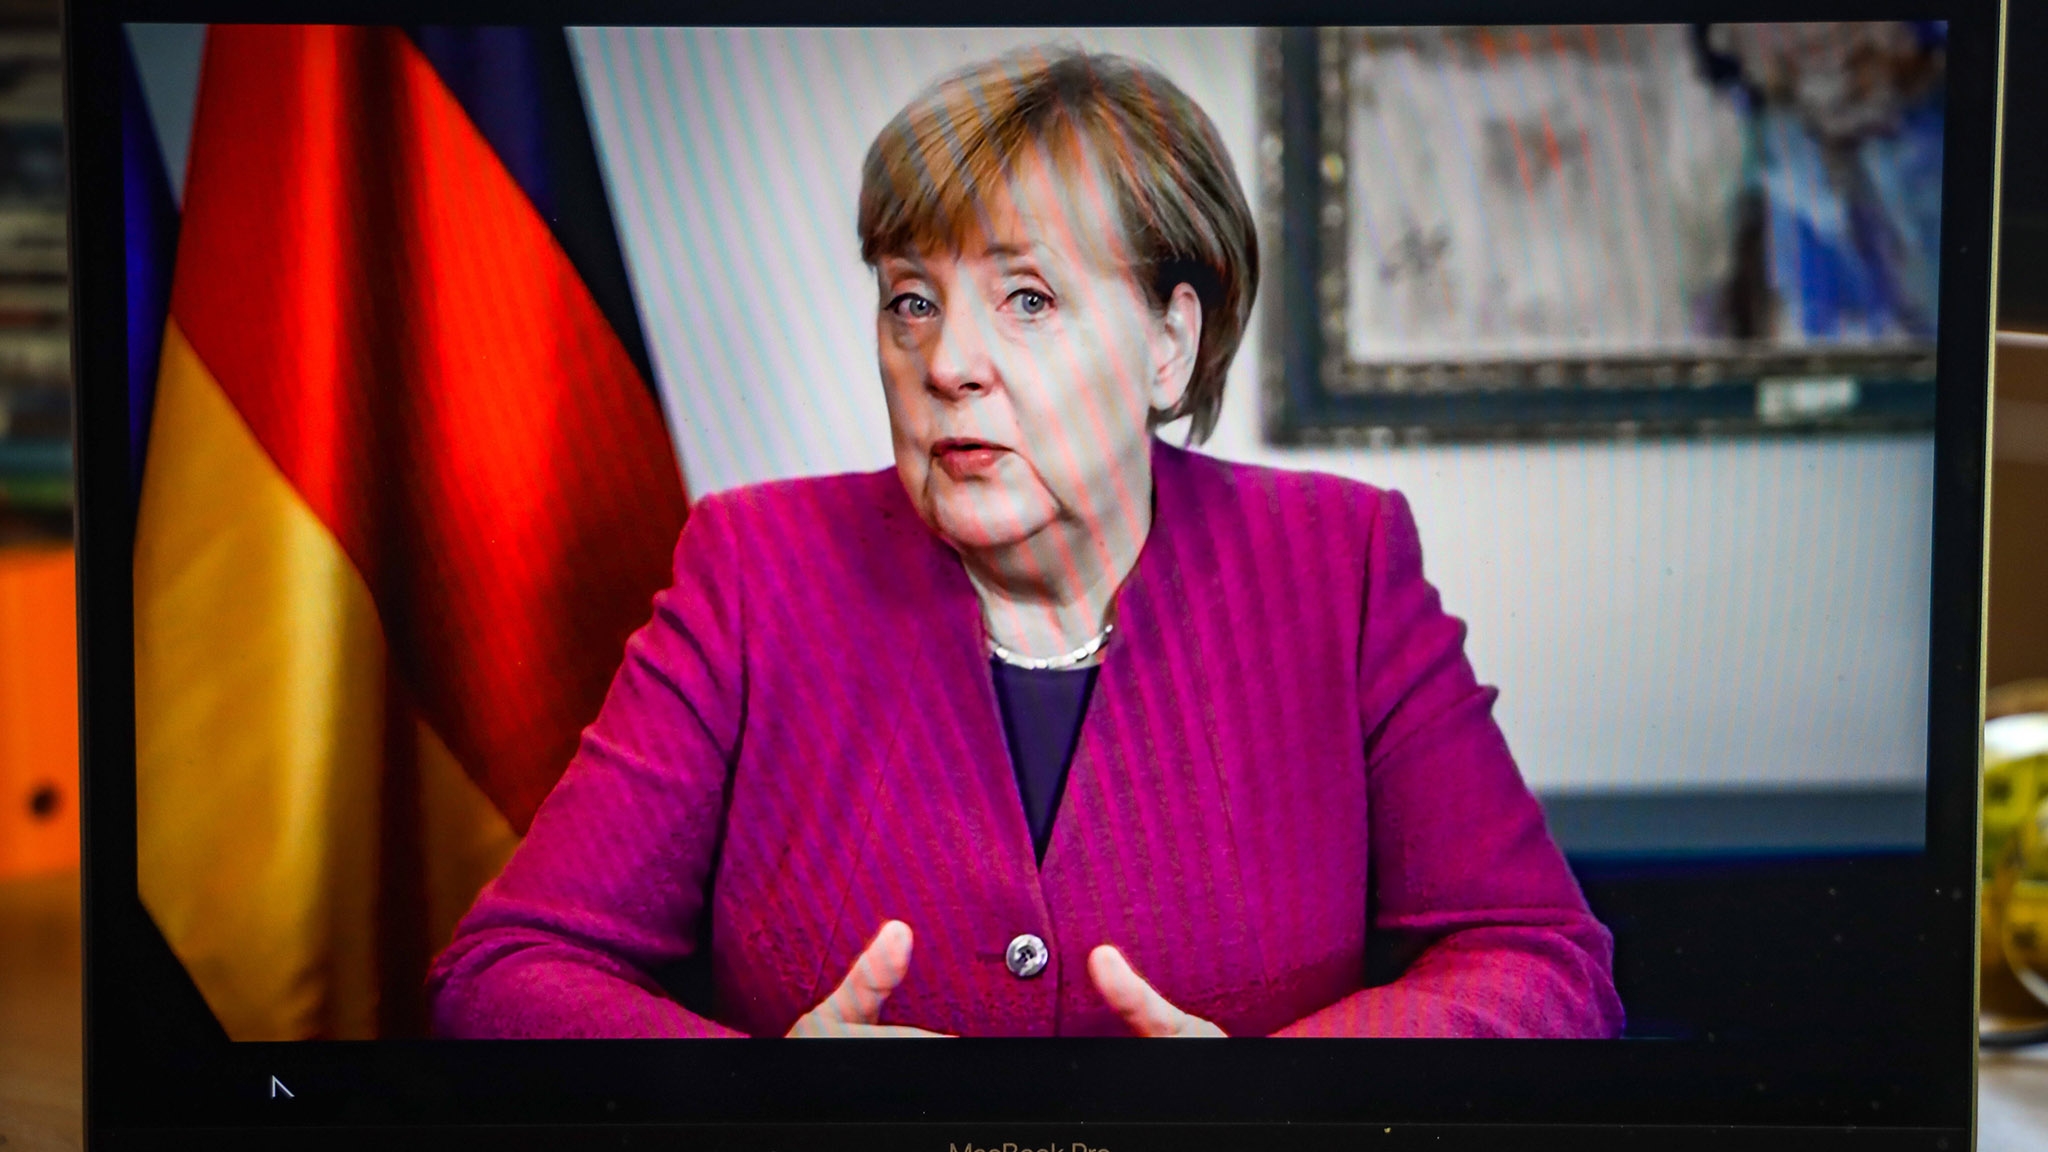 Angela Merkel verabschiedet sich aus ihrem Amt. Was macht die Kanzlerin jetzt? Ikea hat da eine Idee –